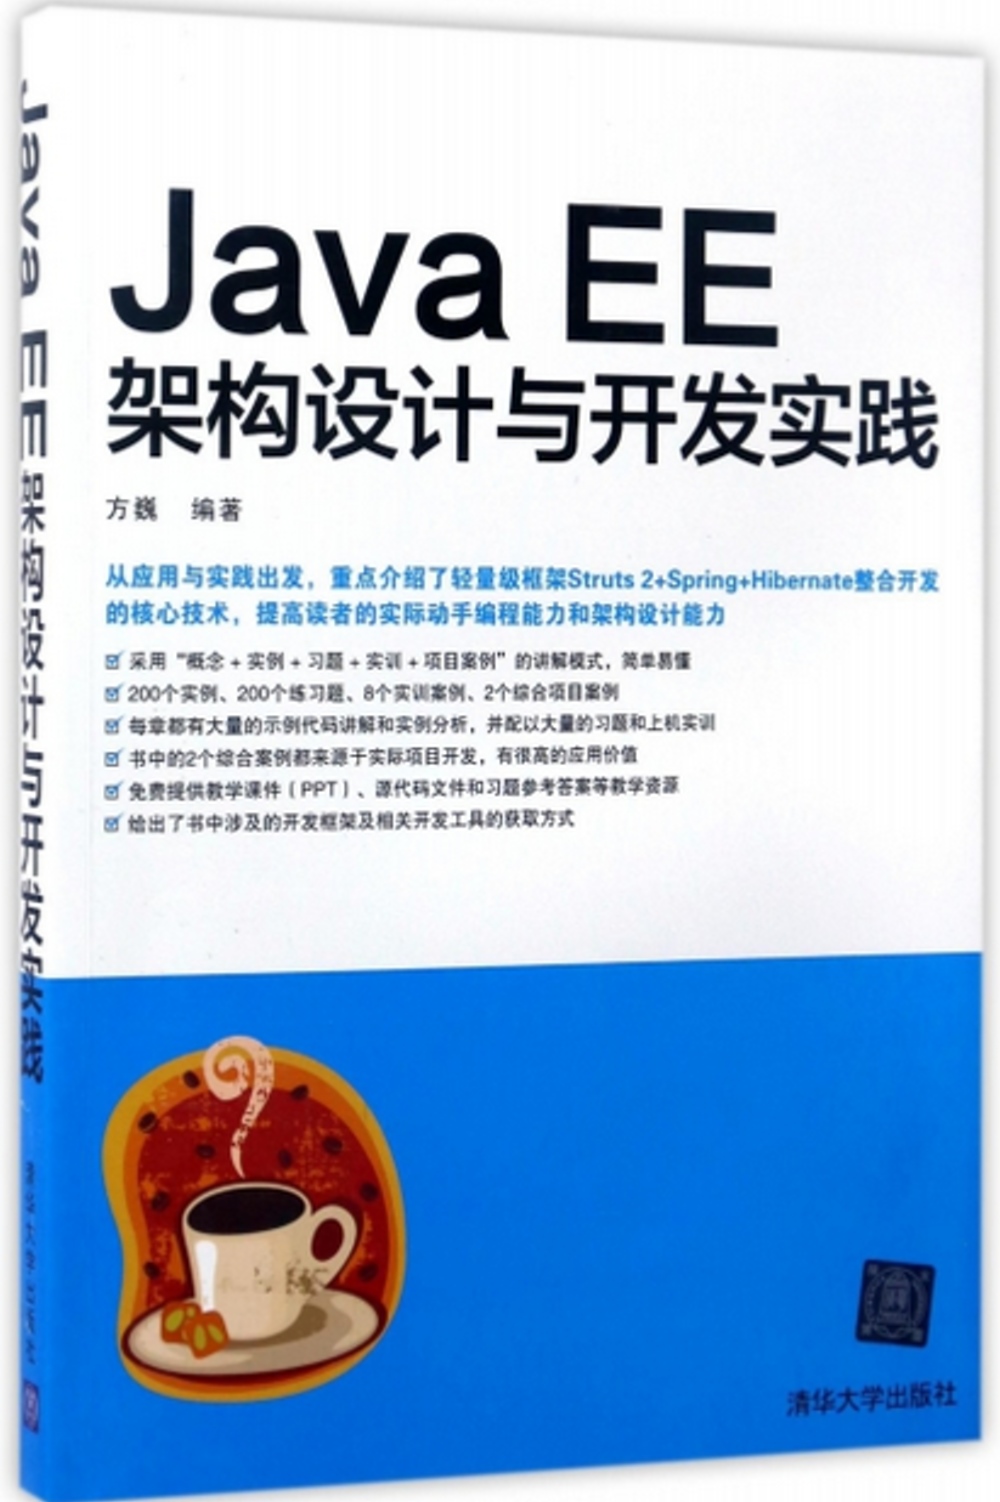 Java EE架構設計與開發實踐